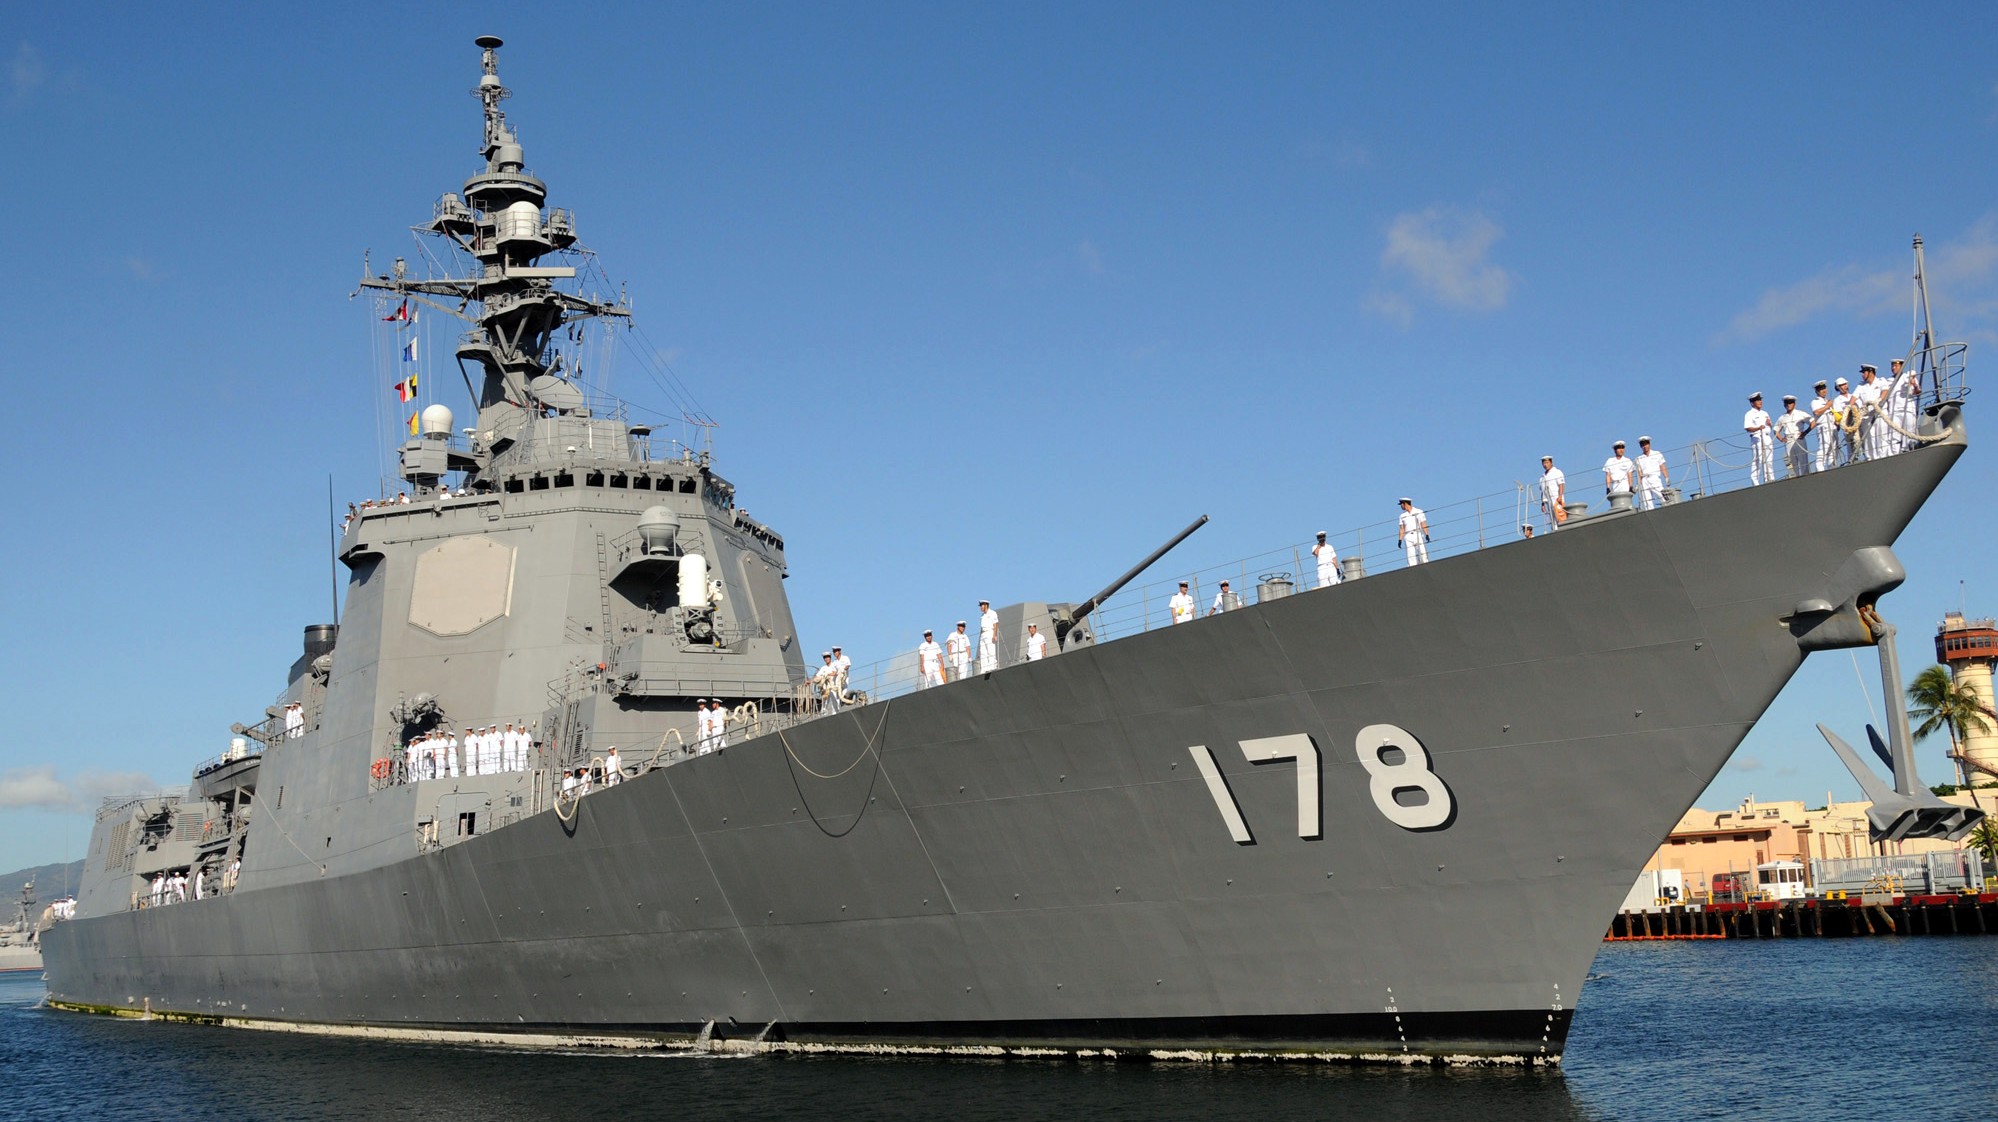 ddg-178 jds ashigara atago class guided missile destroyer japan maritime self defense force jmsdf 16